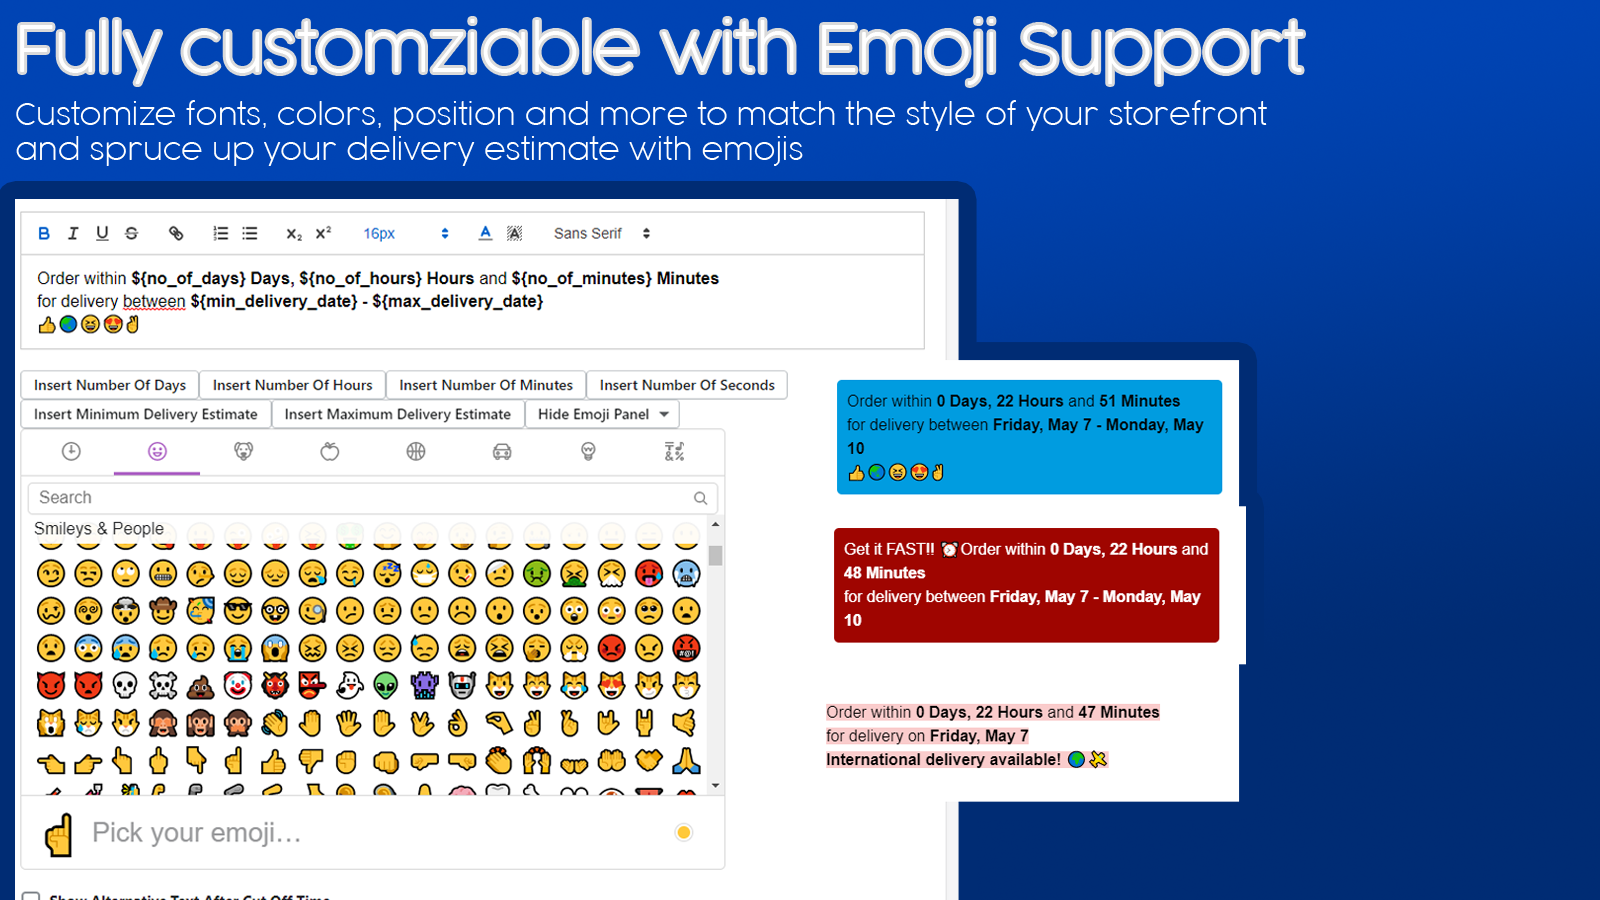 Personalização completa com suporte a emojis.